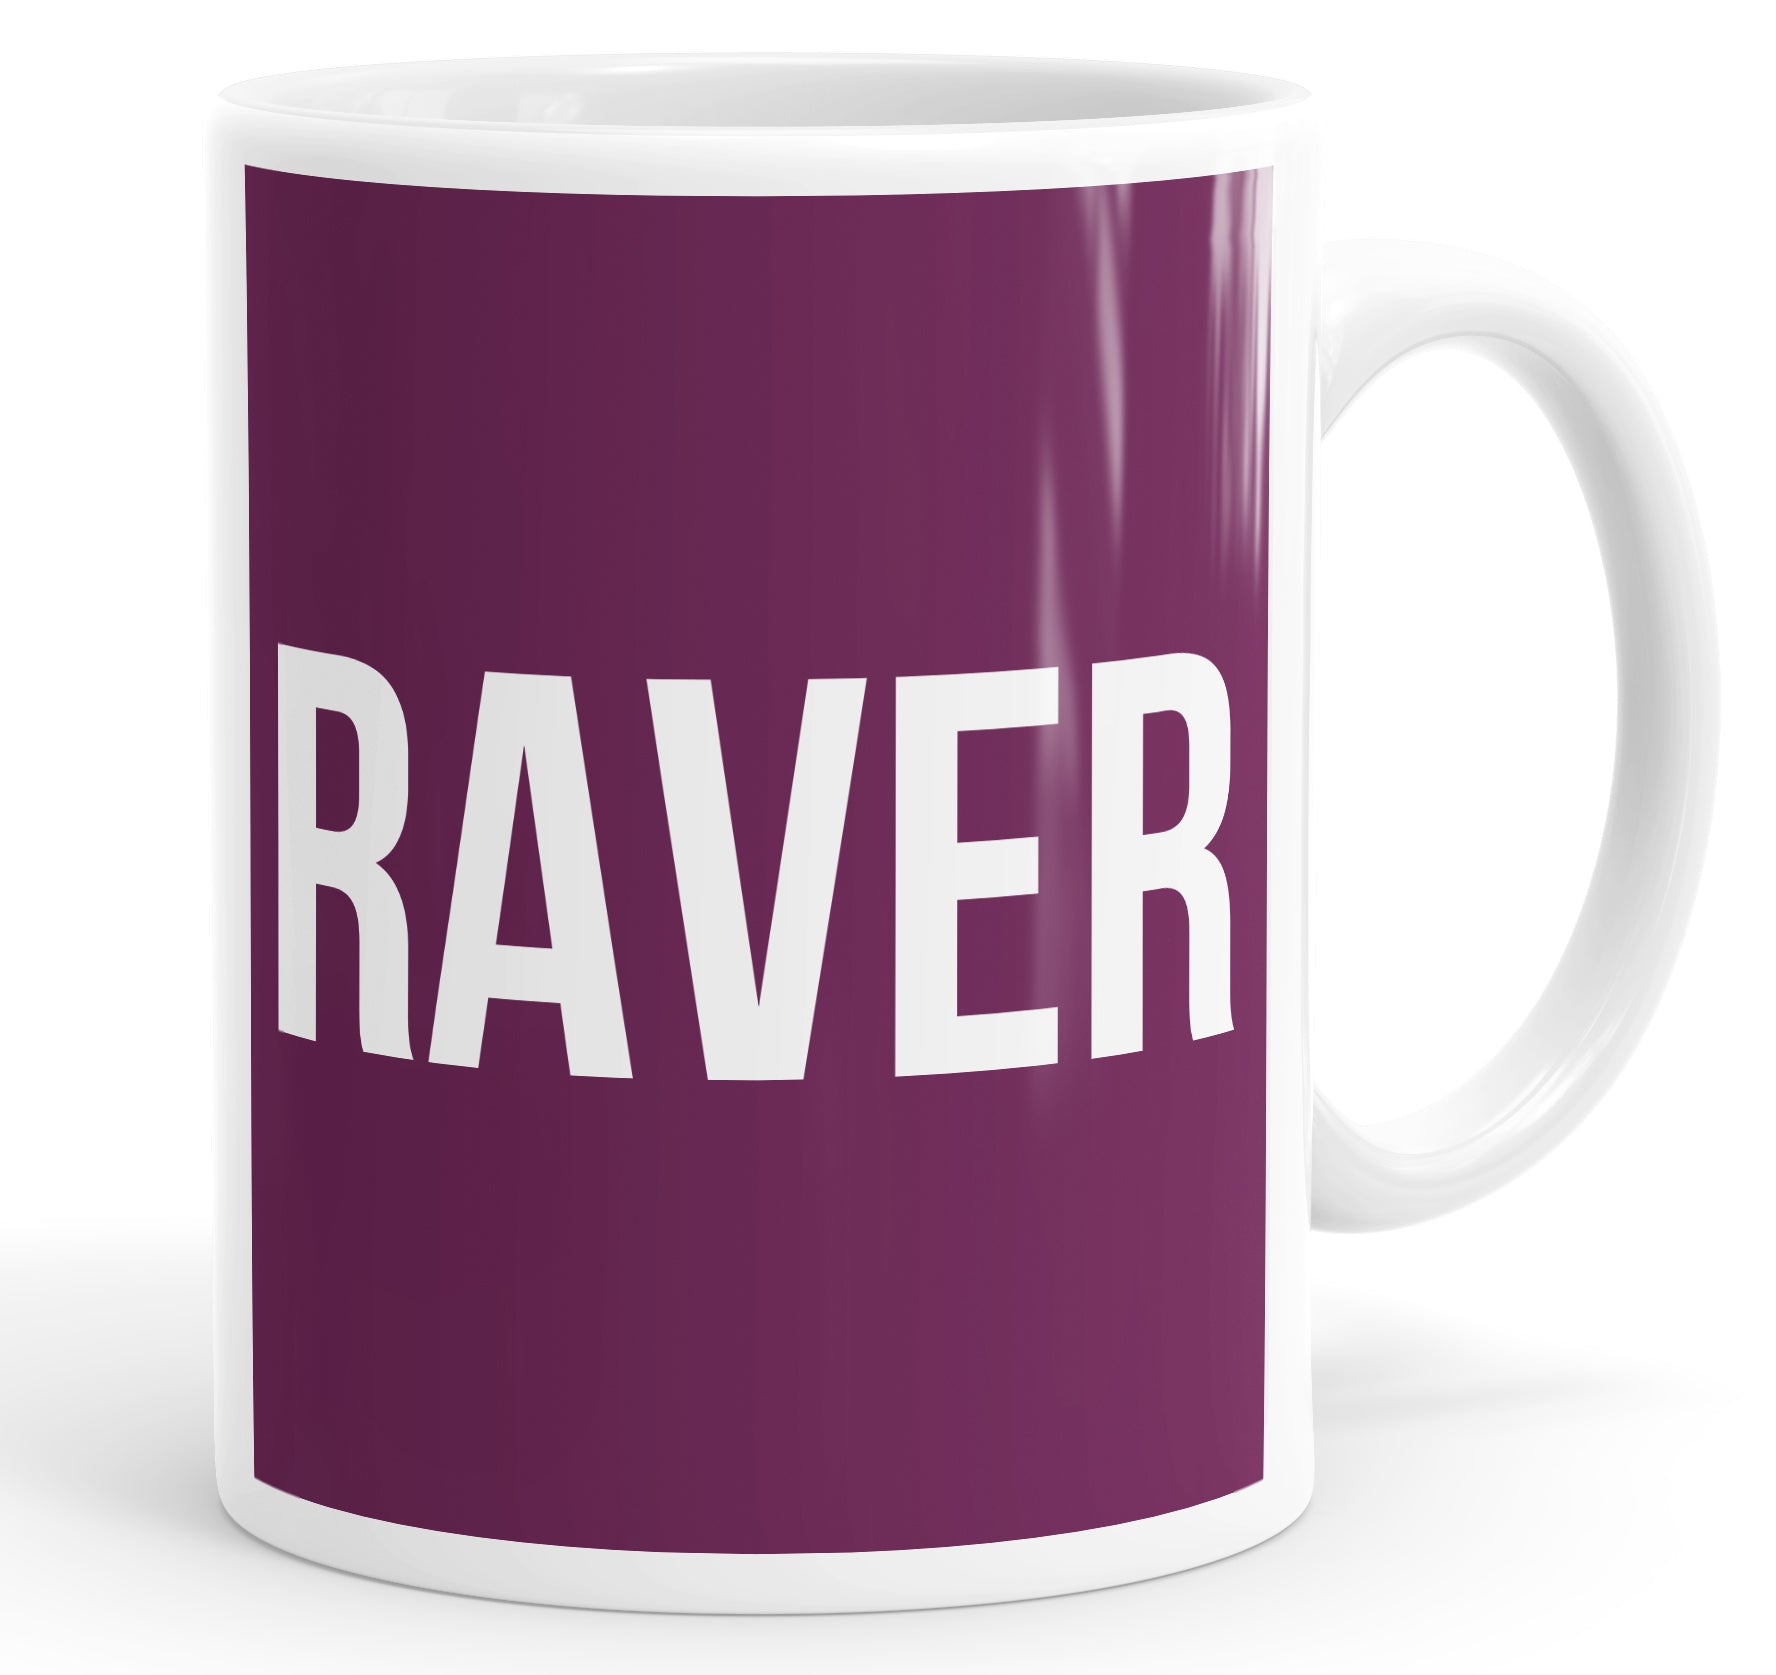 Raver Mug Cup